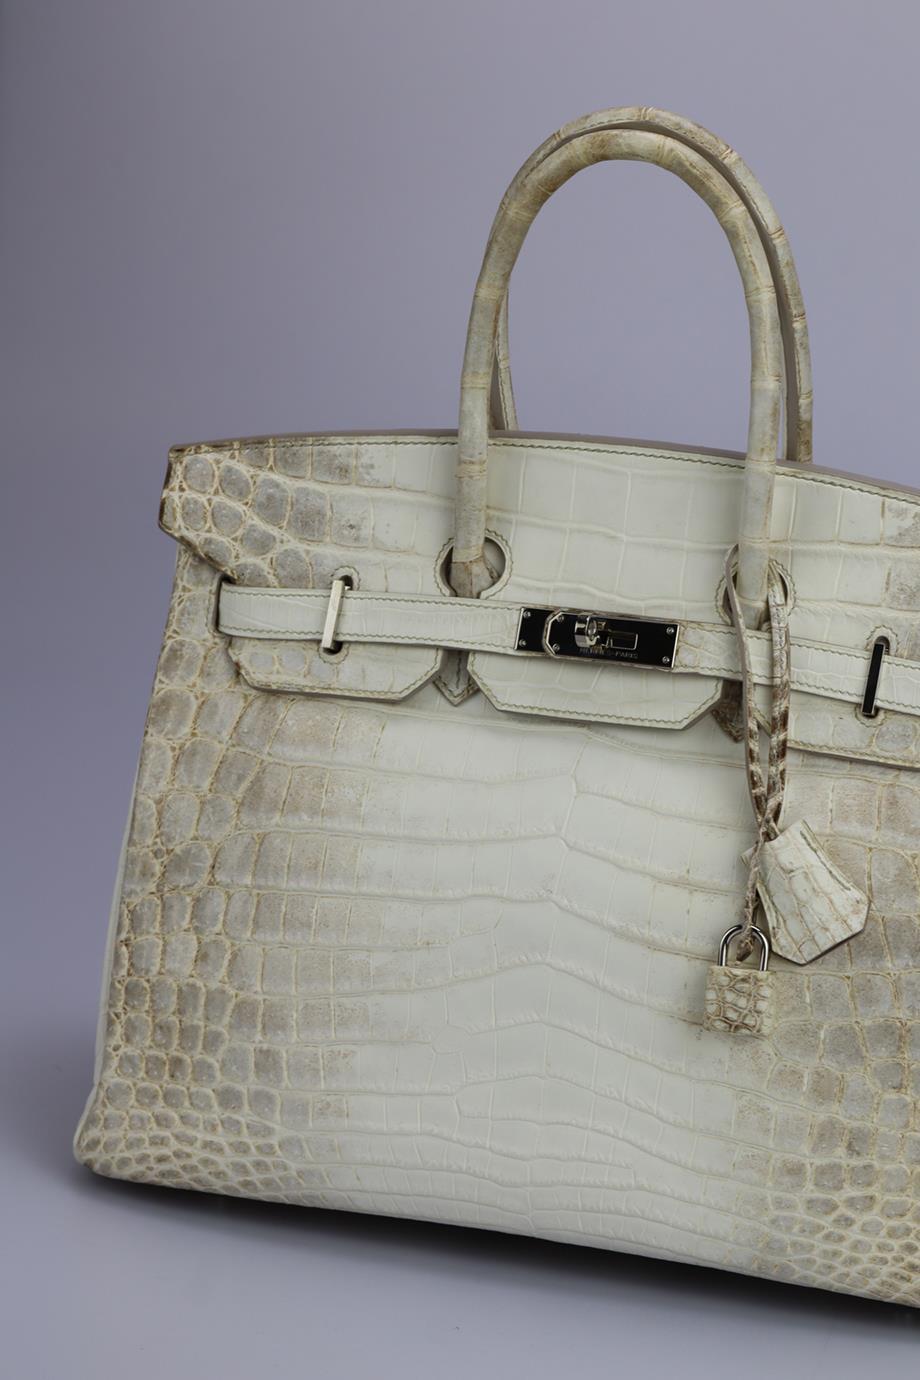 <ul>
<li>Hermès 2011 Birkin 35Cm Himalayan Matte Niloticus Crocodile Bag.</li>
<li>Modèle : Birkin.</li>
<li>Fabriqué en France, ce sac à main Hermès 35cm 2011 a été réalisé en crocodile Niloticus mat en Himalaya et intérieur en cuir. Cette pièce